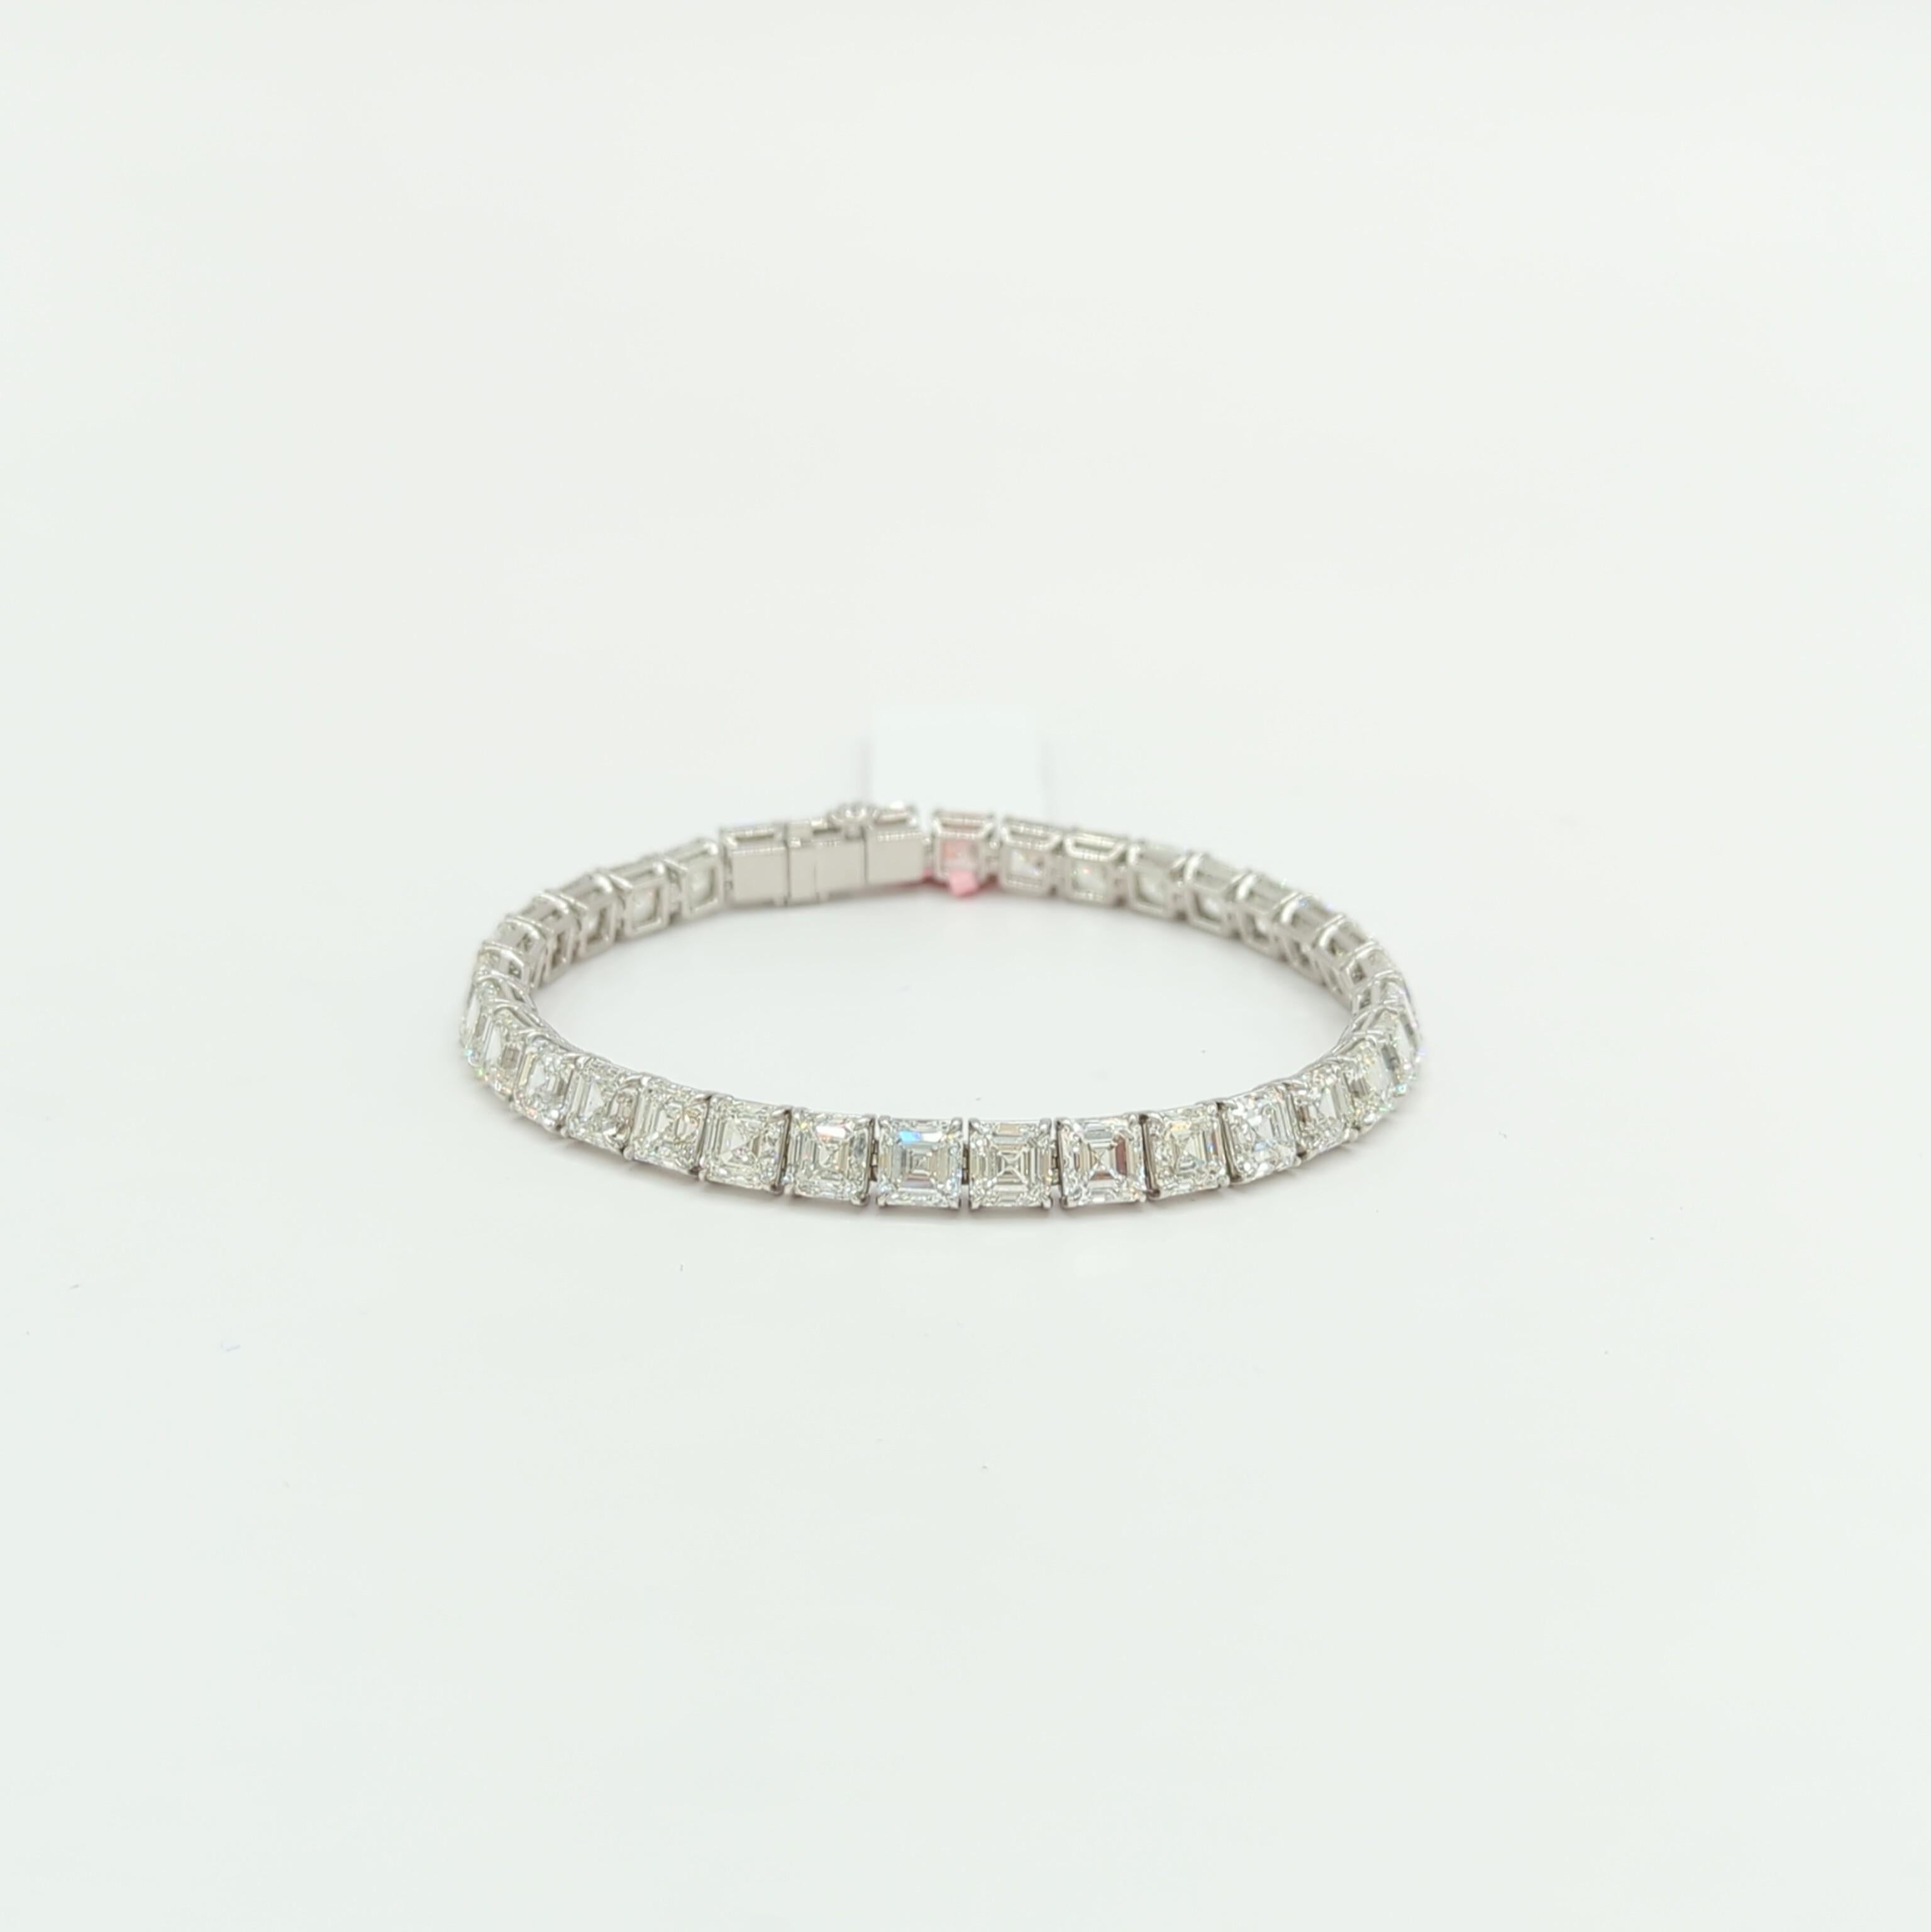 Bracelet tennis en or blanc 18 carats avec diamants blancs taille Asscher de 34,06 carats, certifiés GIA 3